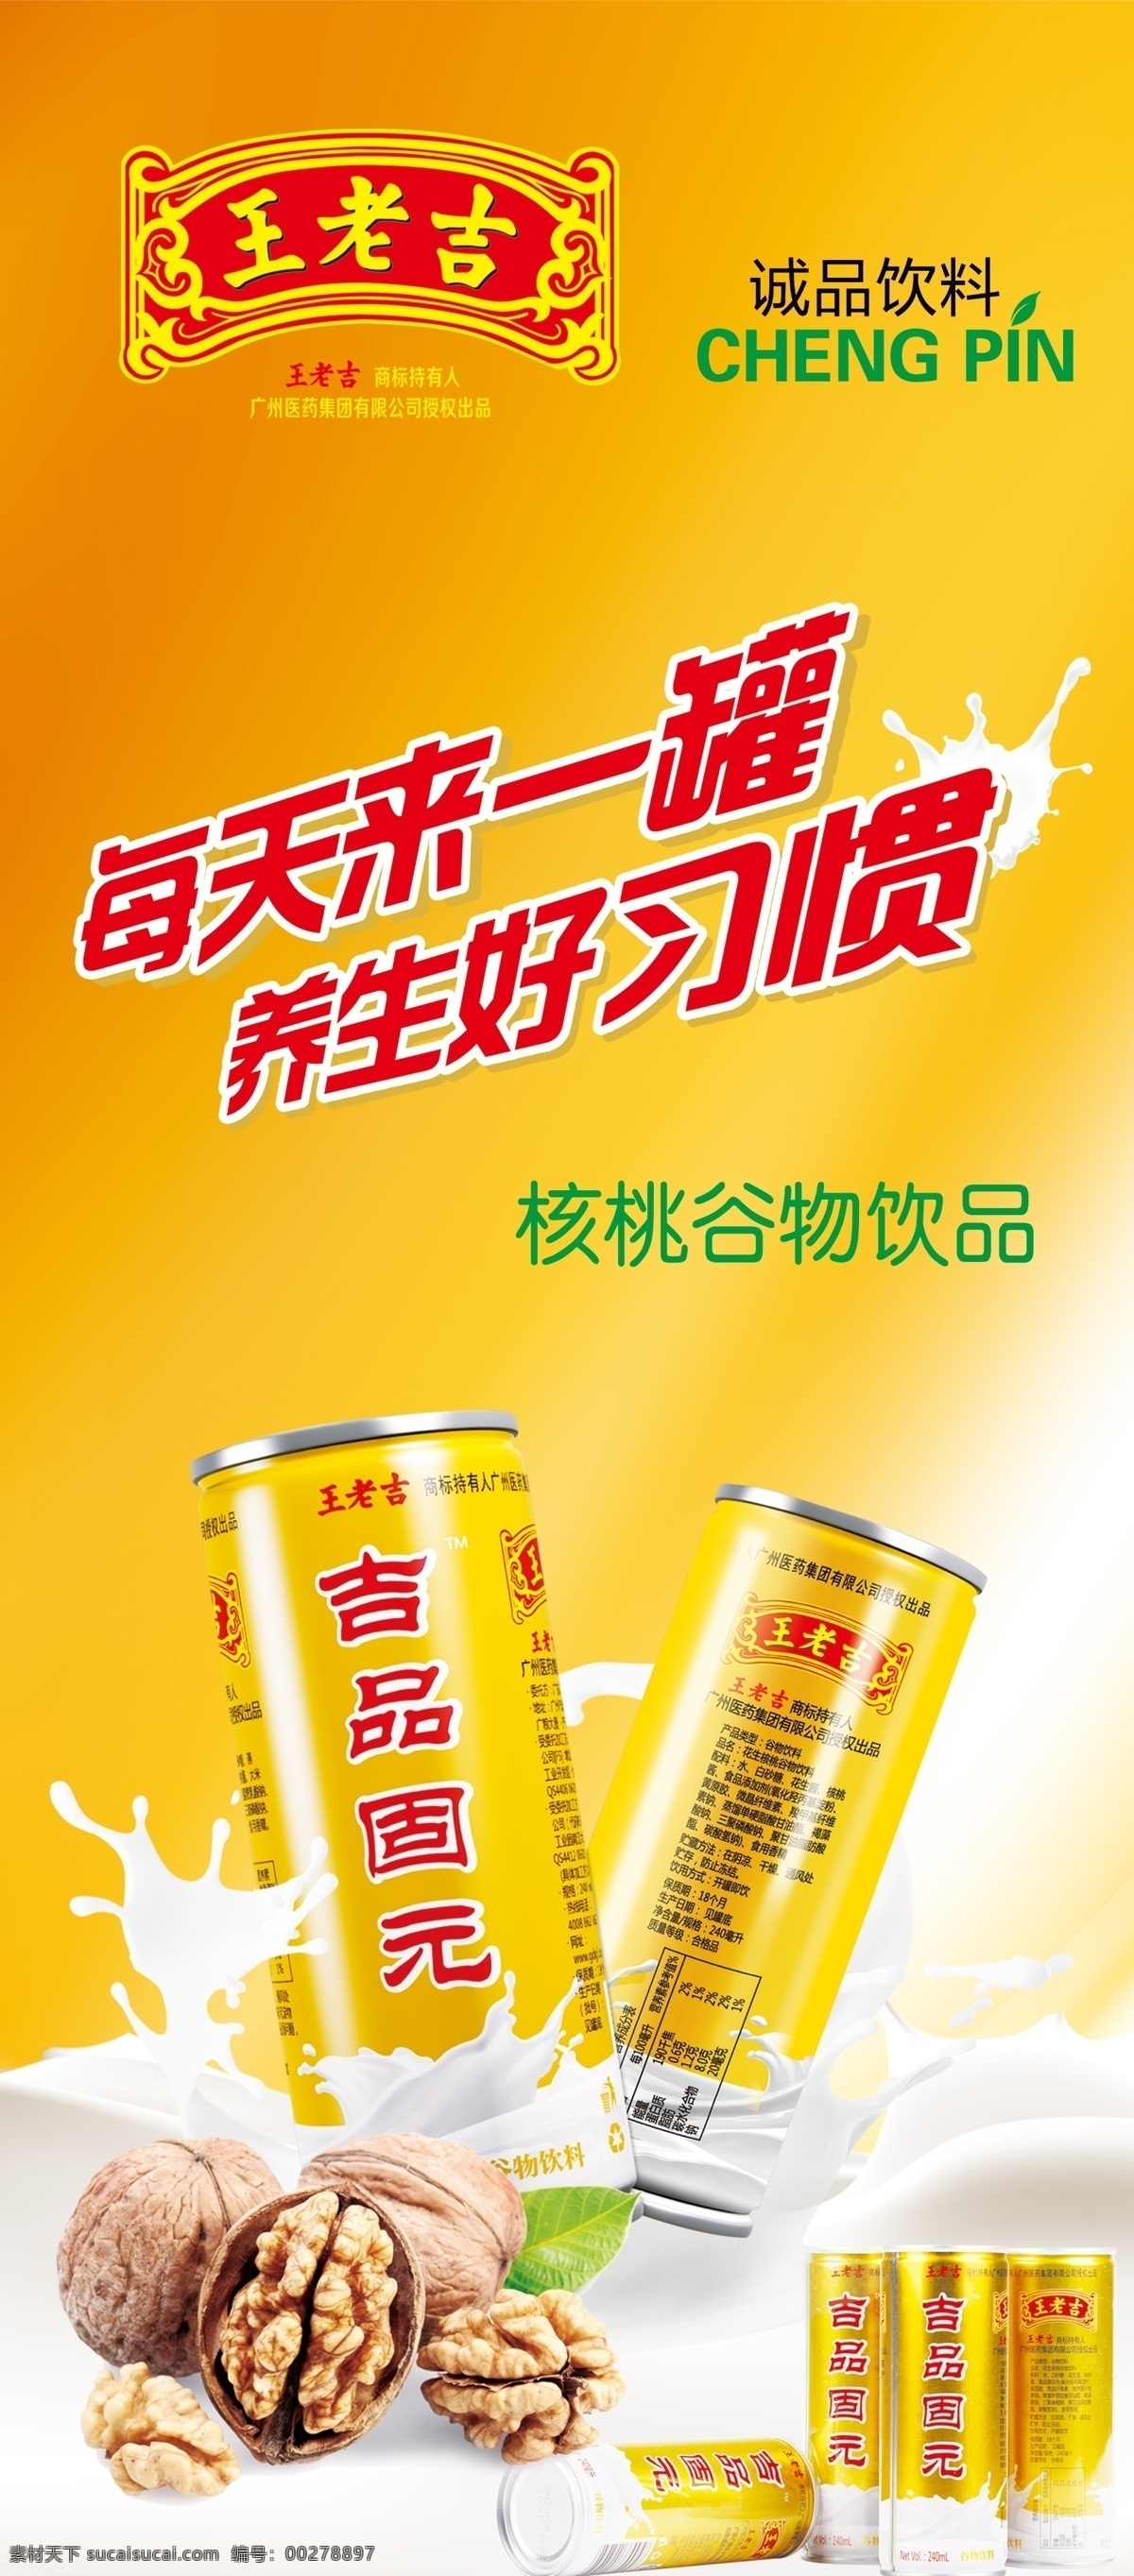 王老吉 固元 王老吉新品 展架海报 核桃 每天来一罐 养成好习惯 王老吉标志 黄色